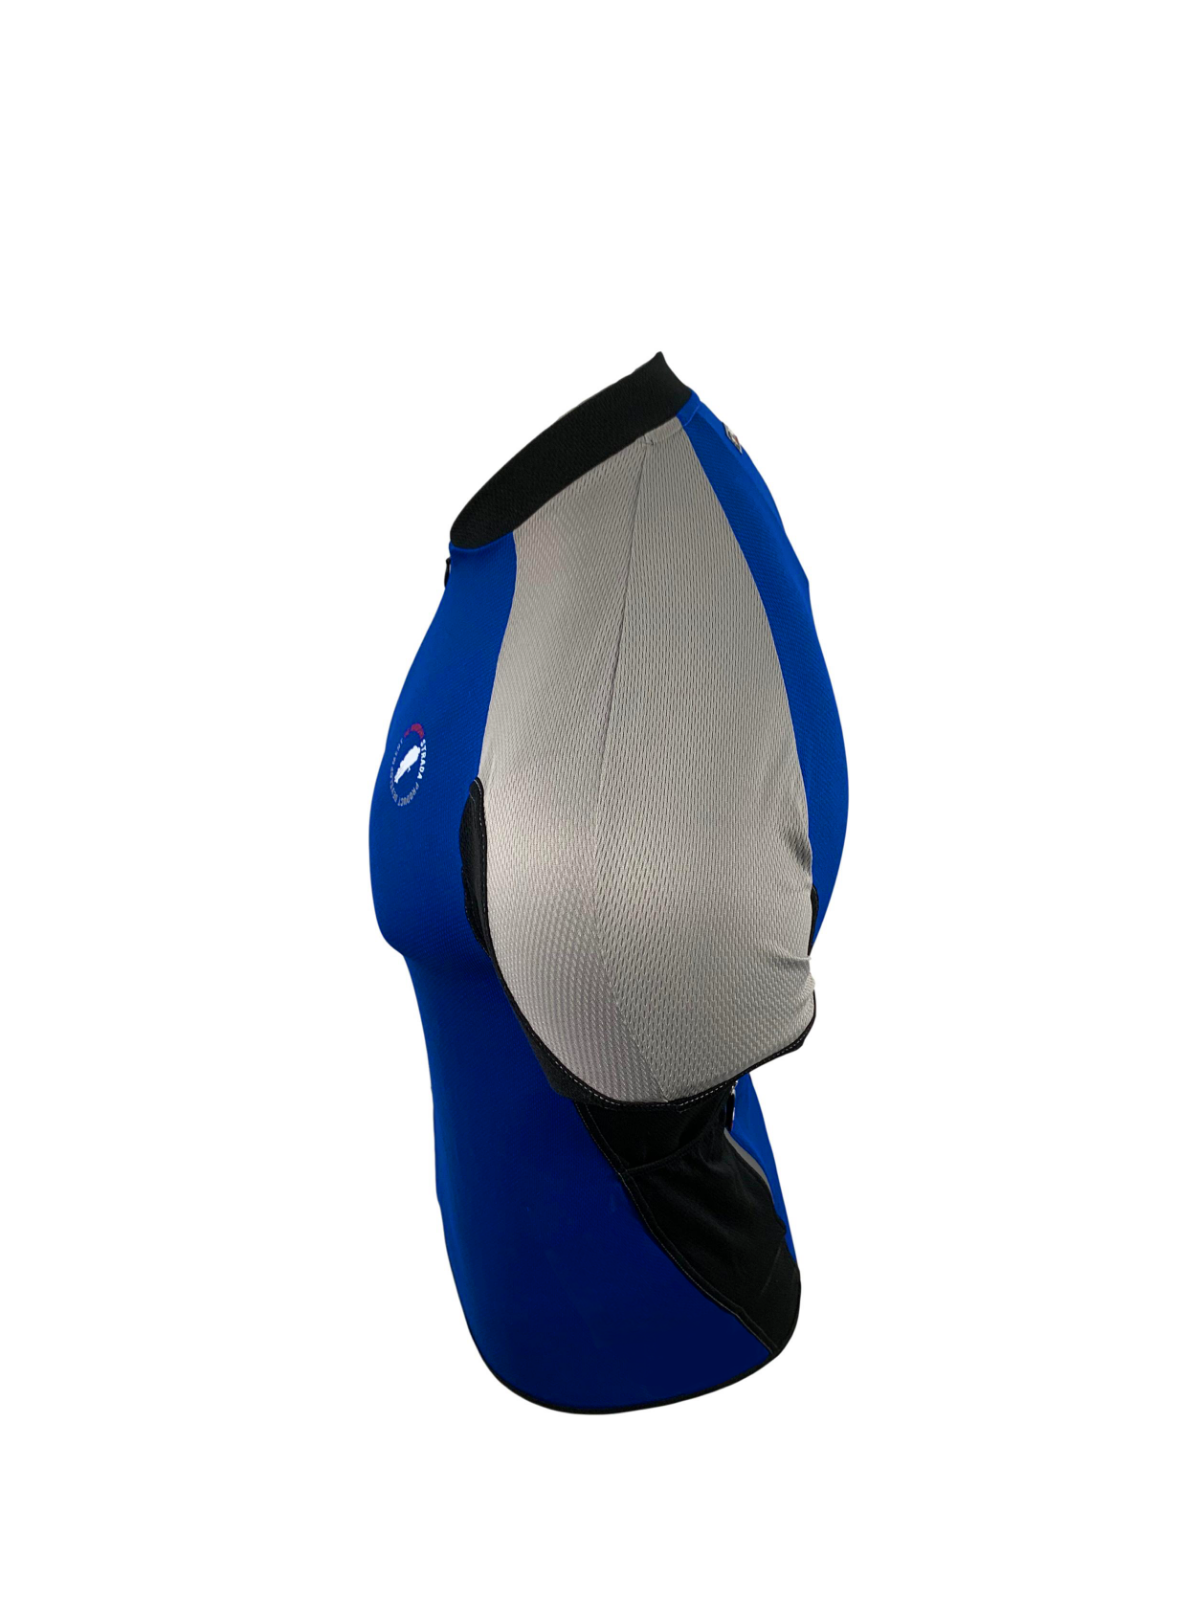 De Marchi Contour Light Ceramic Edition Jersey - Royal Blue or Strada Orange - Sportandleisure.com (6968106025114)